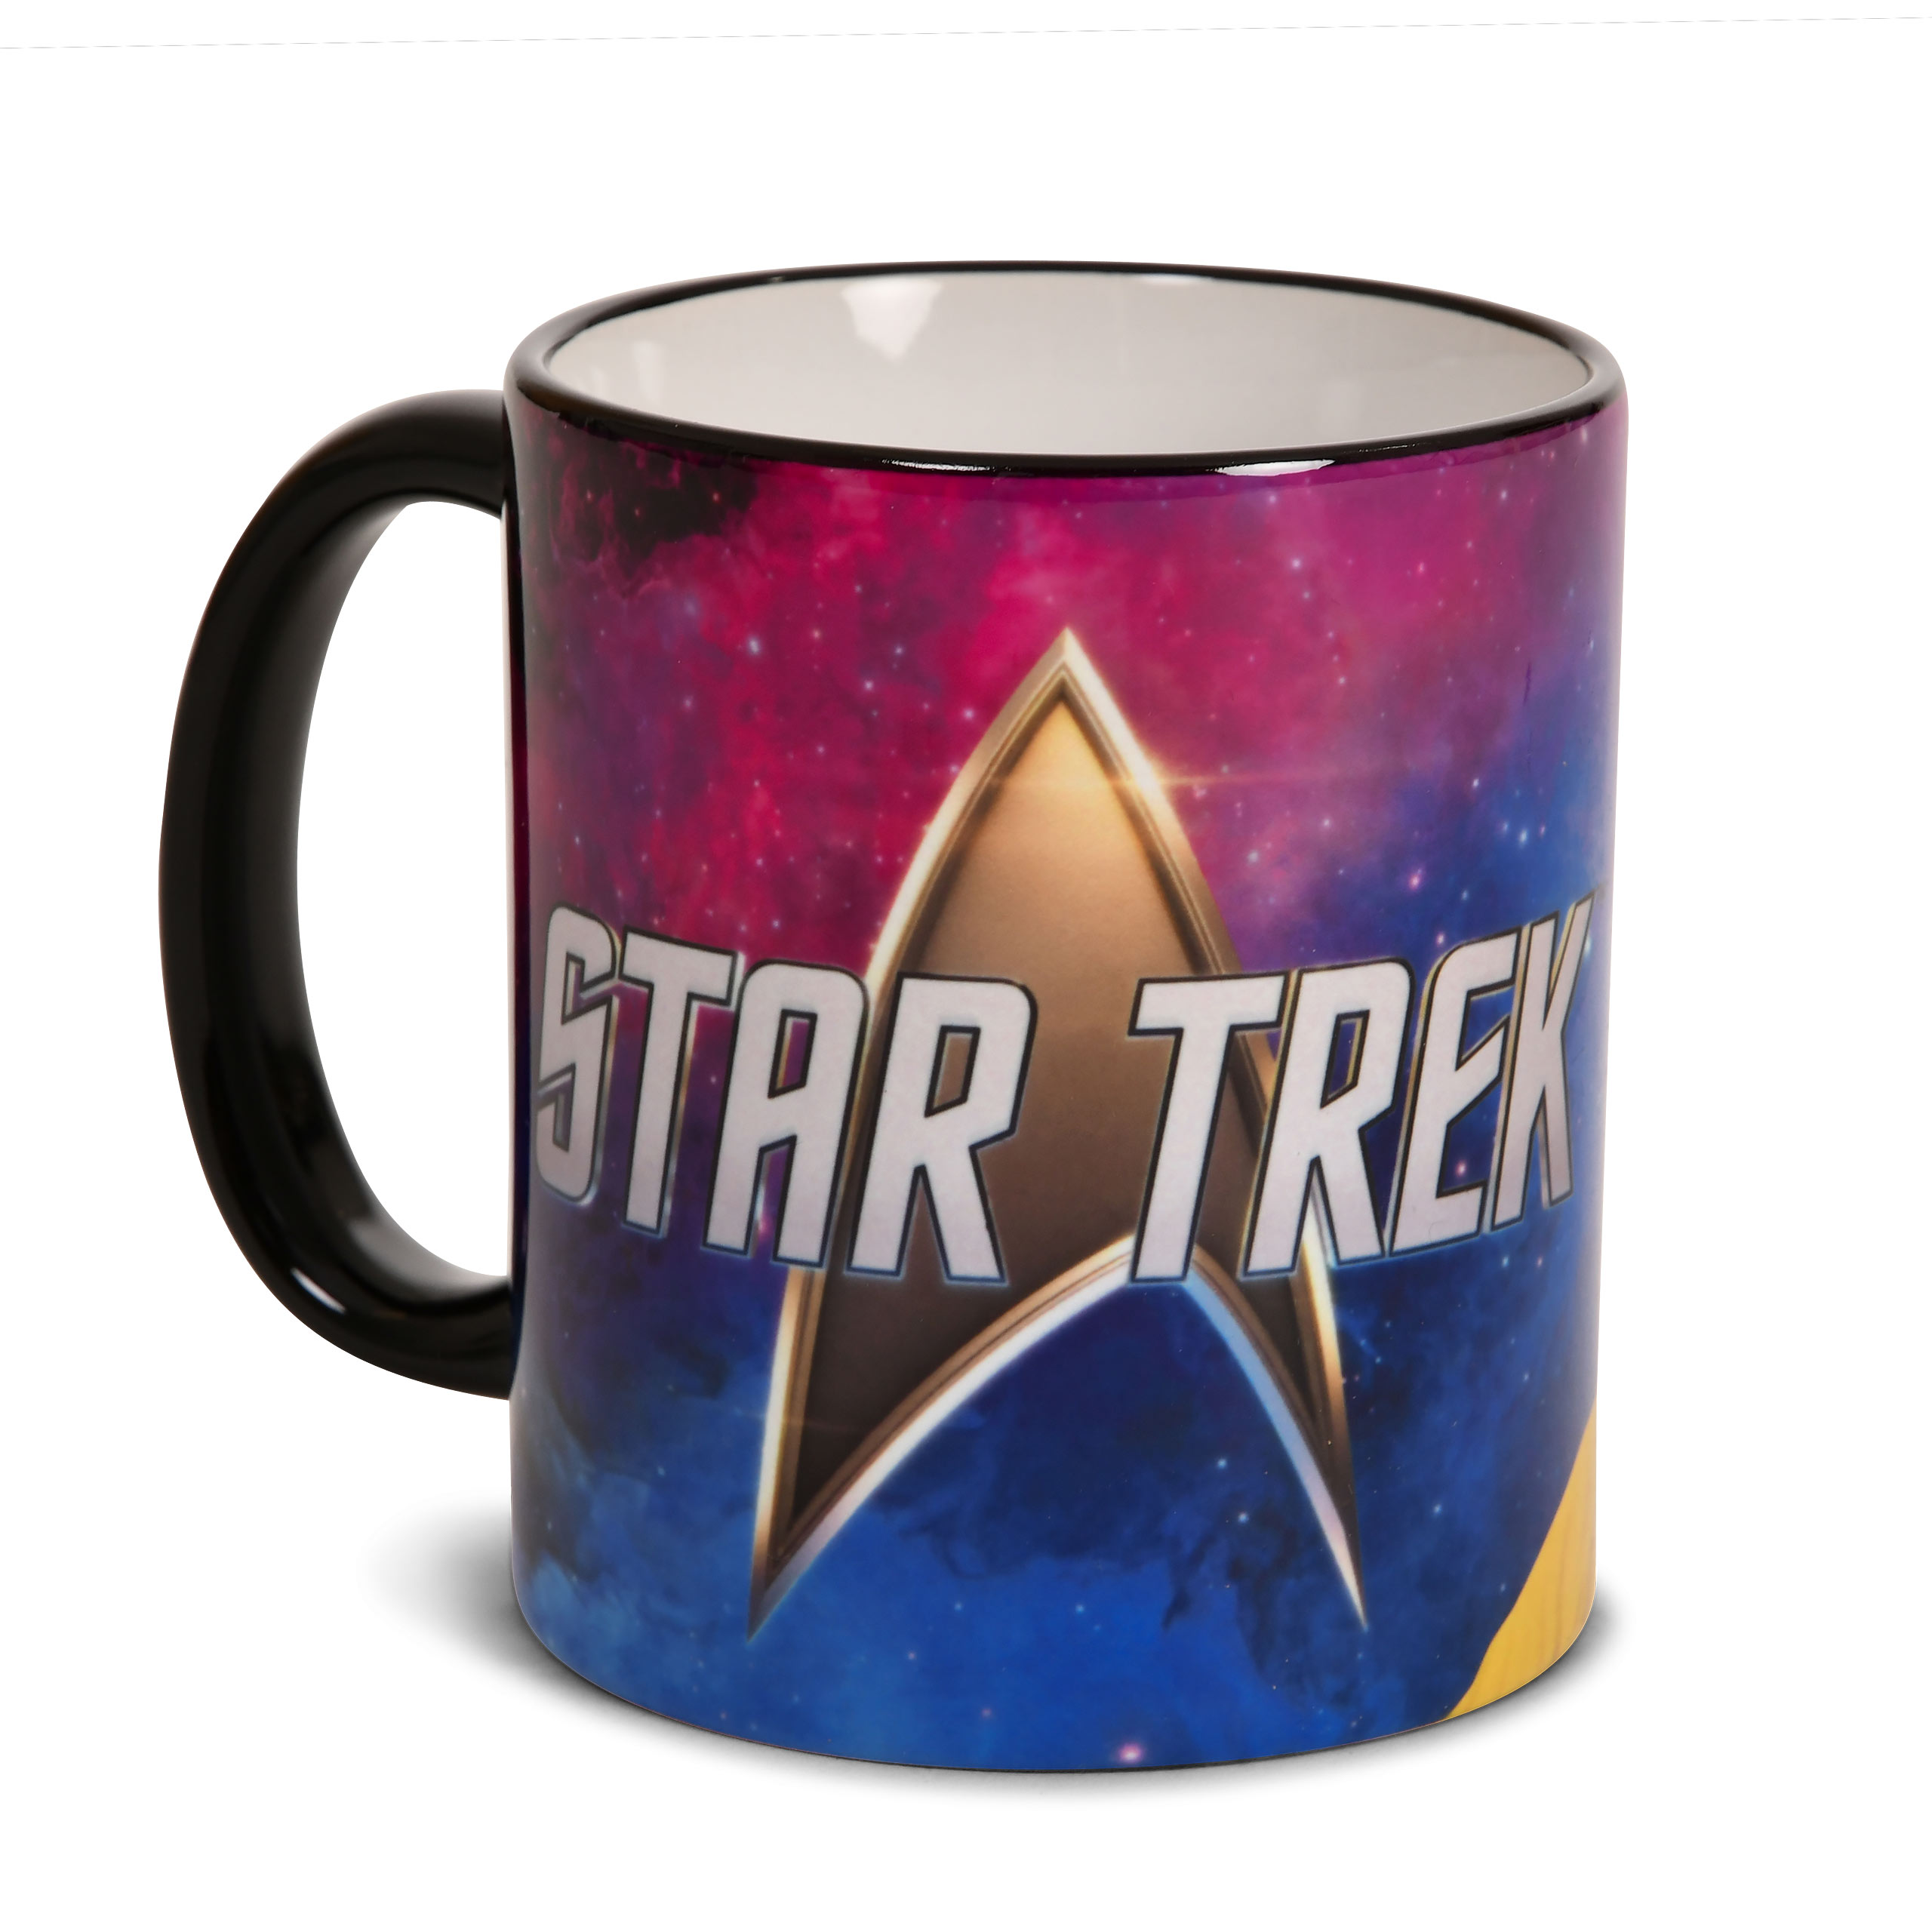 Star Trek - Captain Kirk Mug